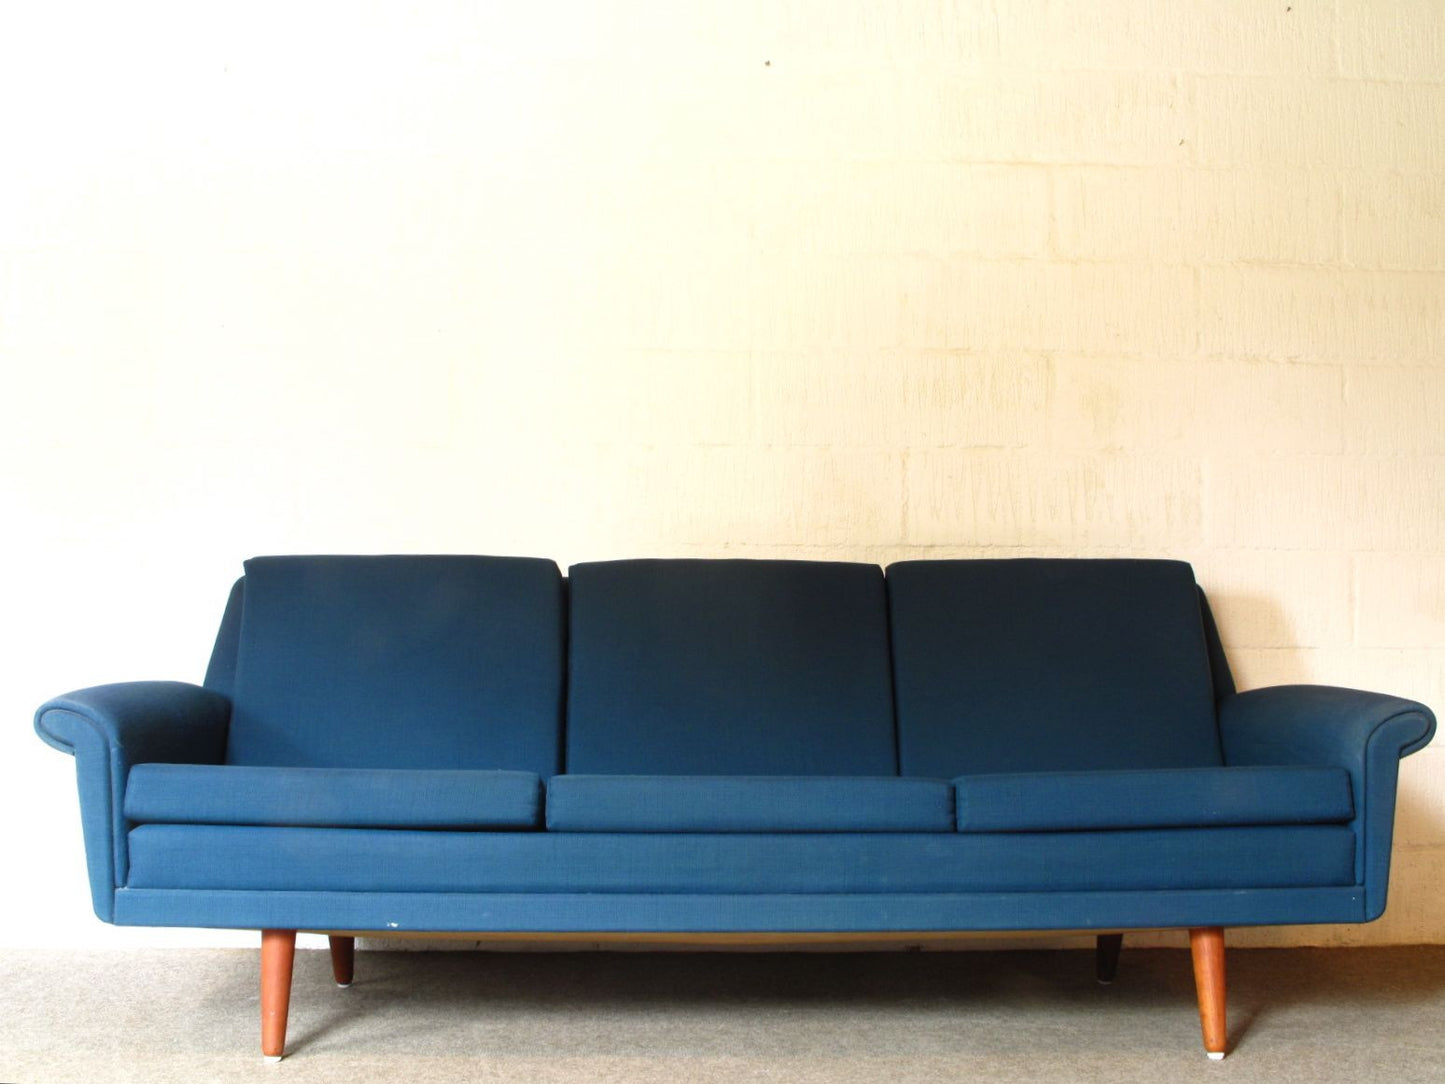 Three seat sofa in sea blue wool